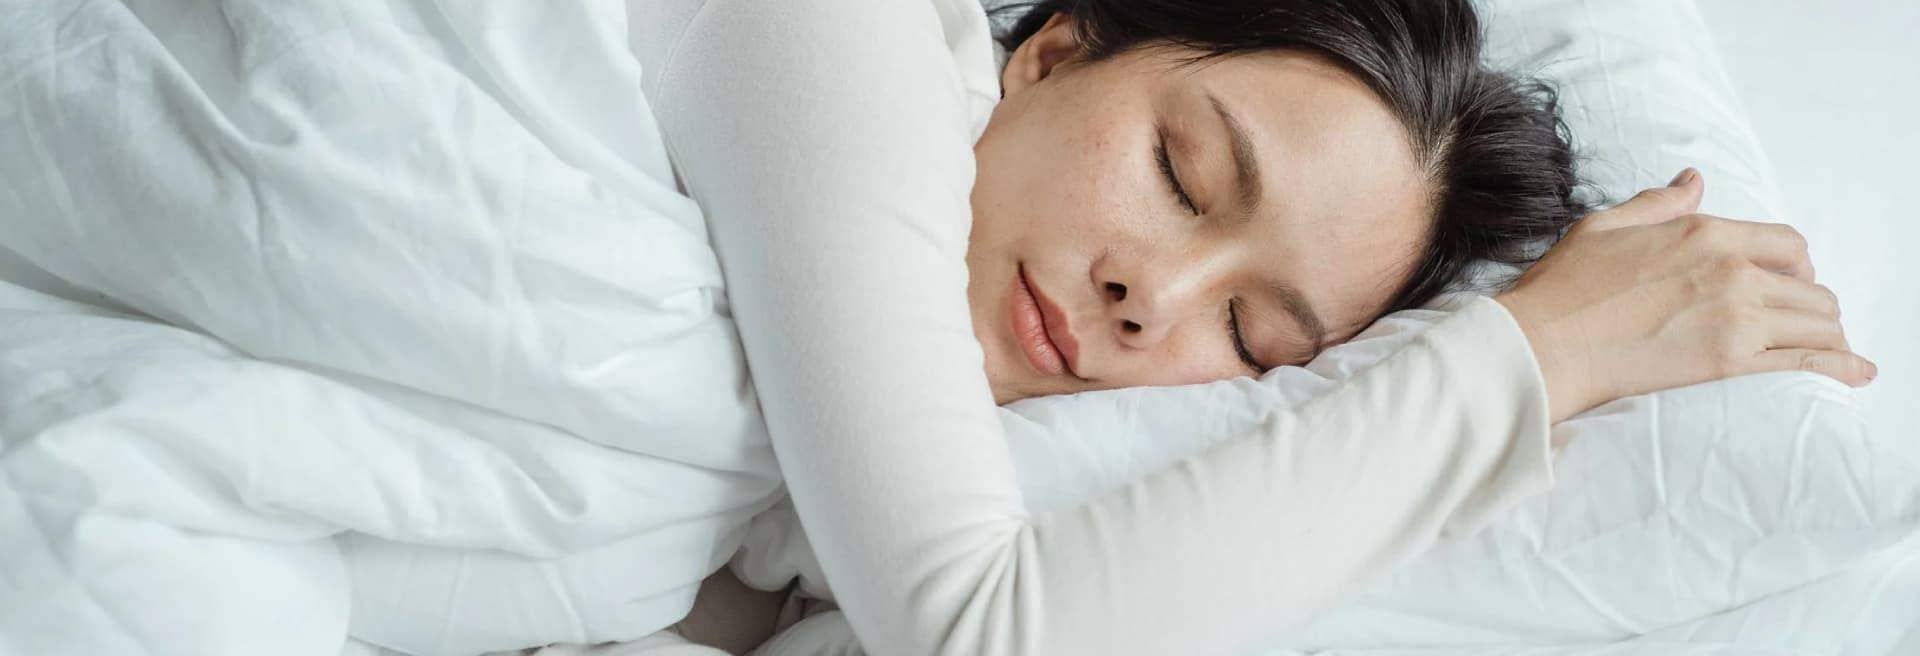 Dormir boca abajo: todo lo que debes saber